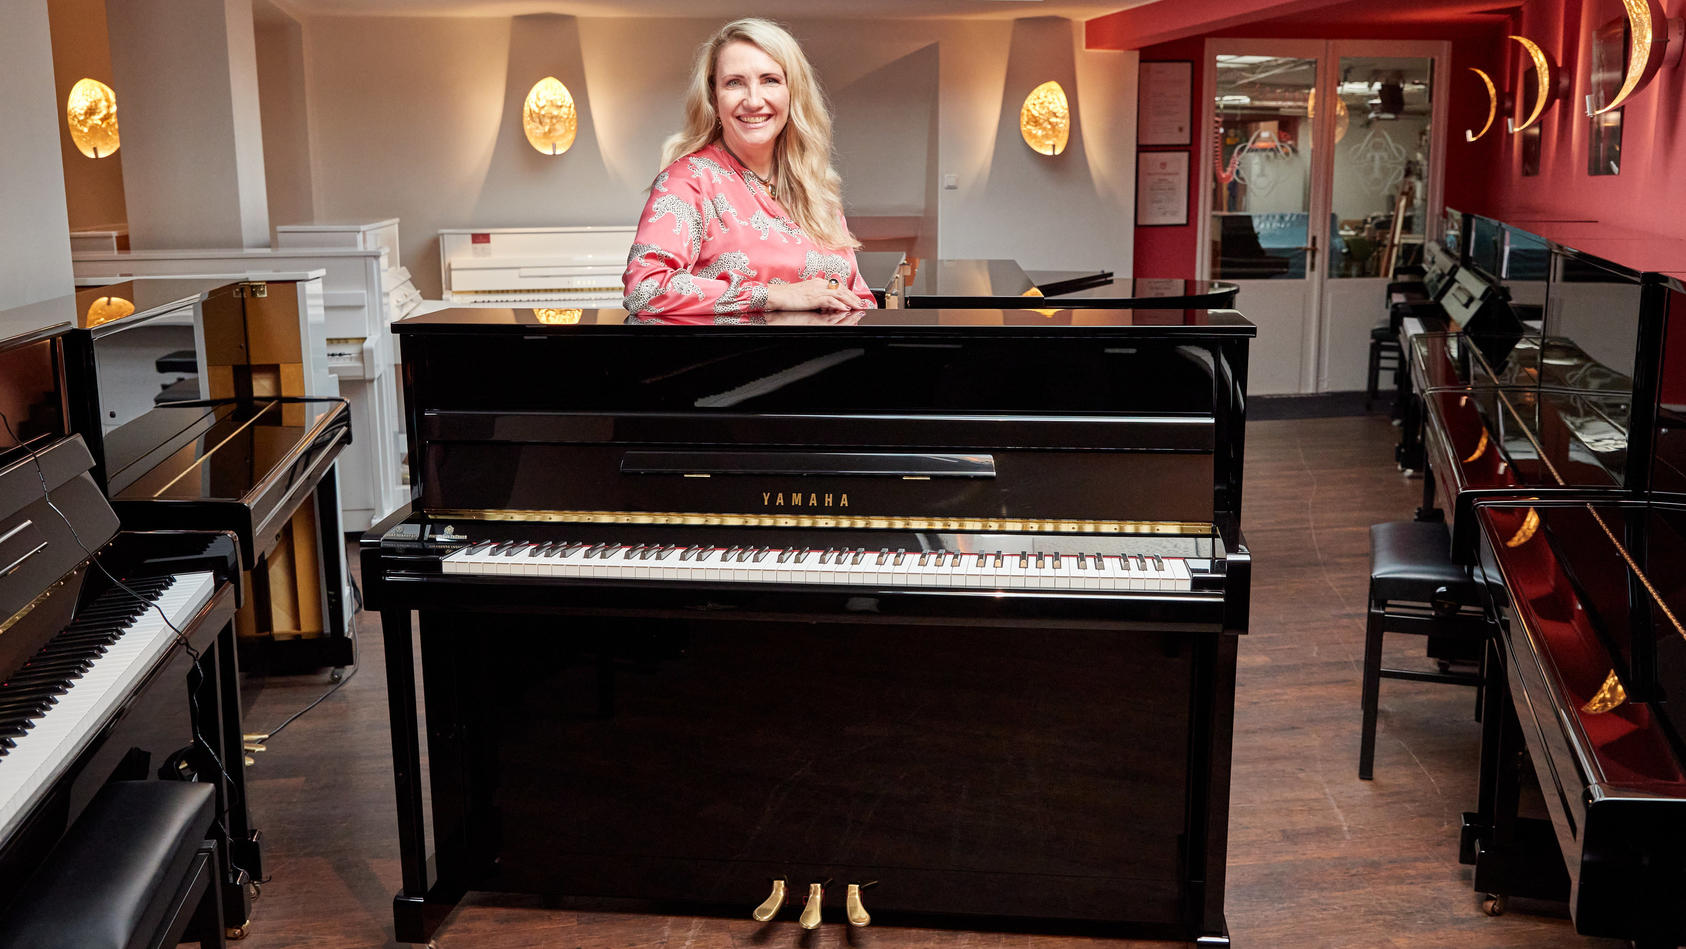 25.08.2022, Hamburg: Yvonne Trübger, Inhaberin, steht hinter einem von 15 Klavieren, das anlässlich des 150. Jubiläums des Pianohauses Trübger gespendet werden soll. Das Pianohaus gehört zu den letzten Pianohäusern, die nicht nur eine Marke vertreten